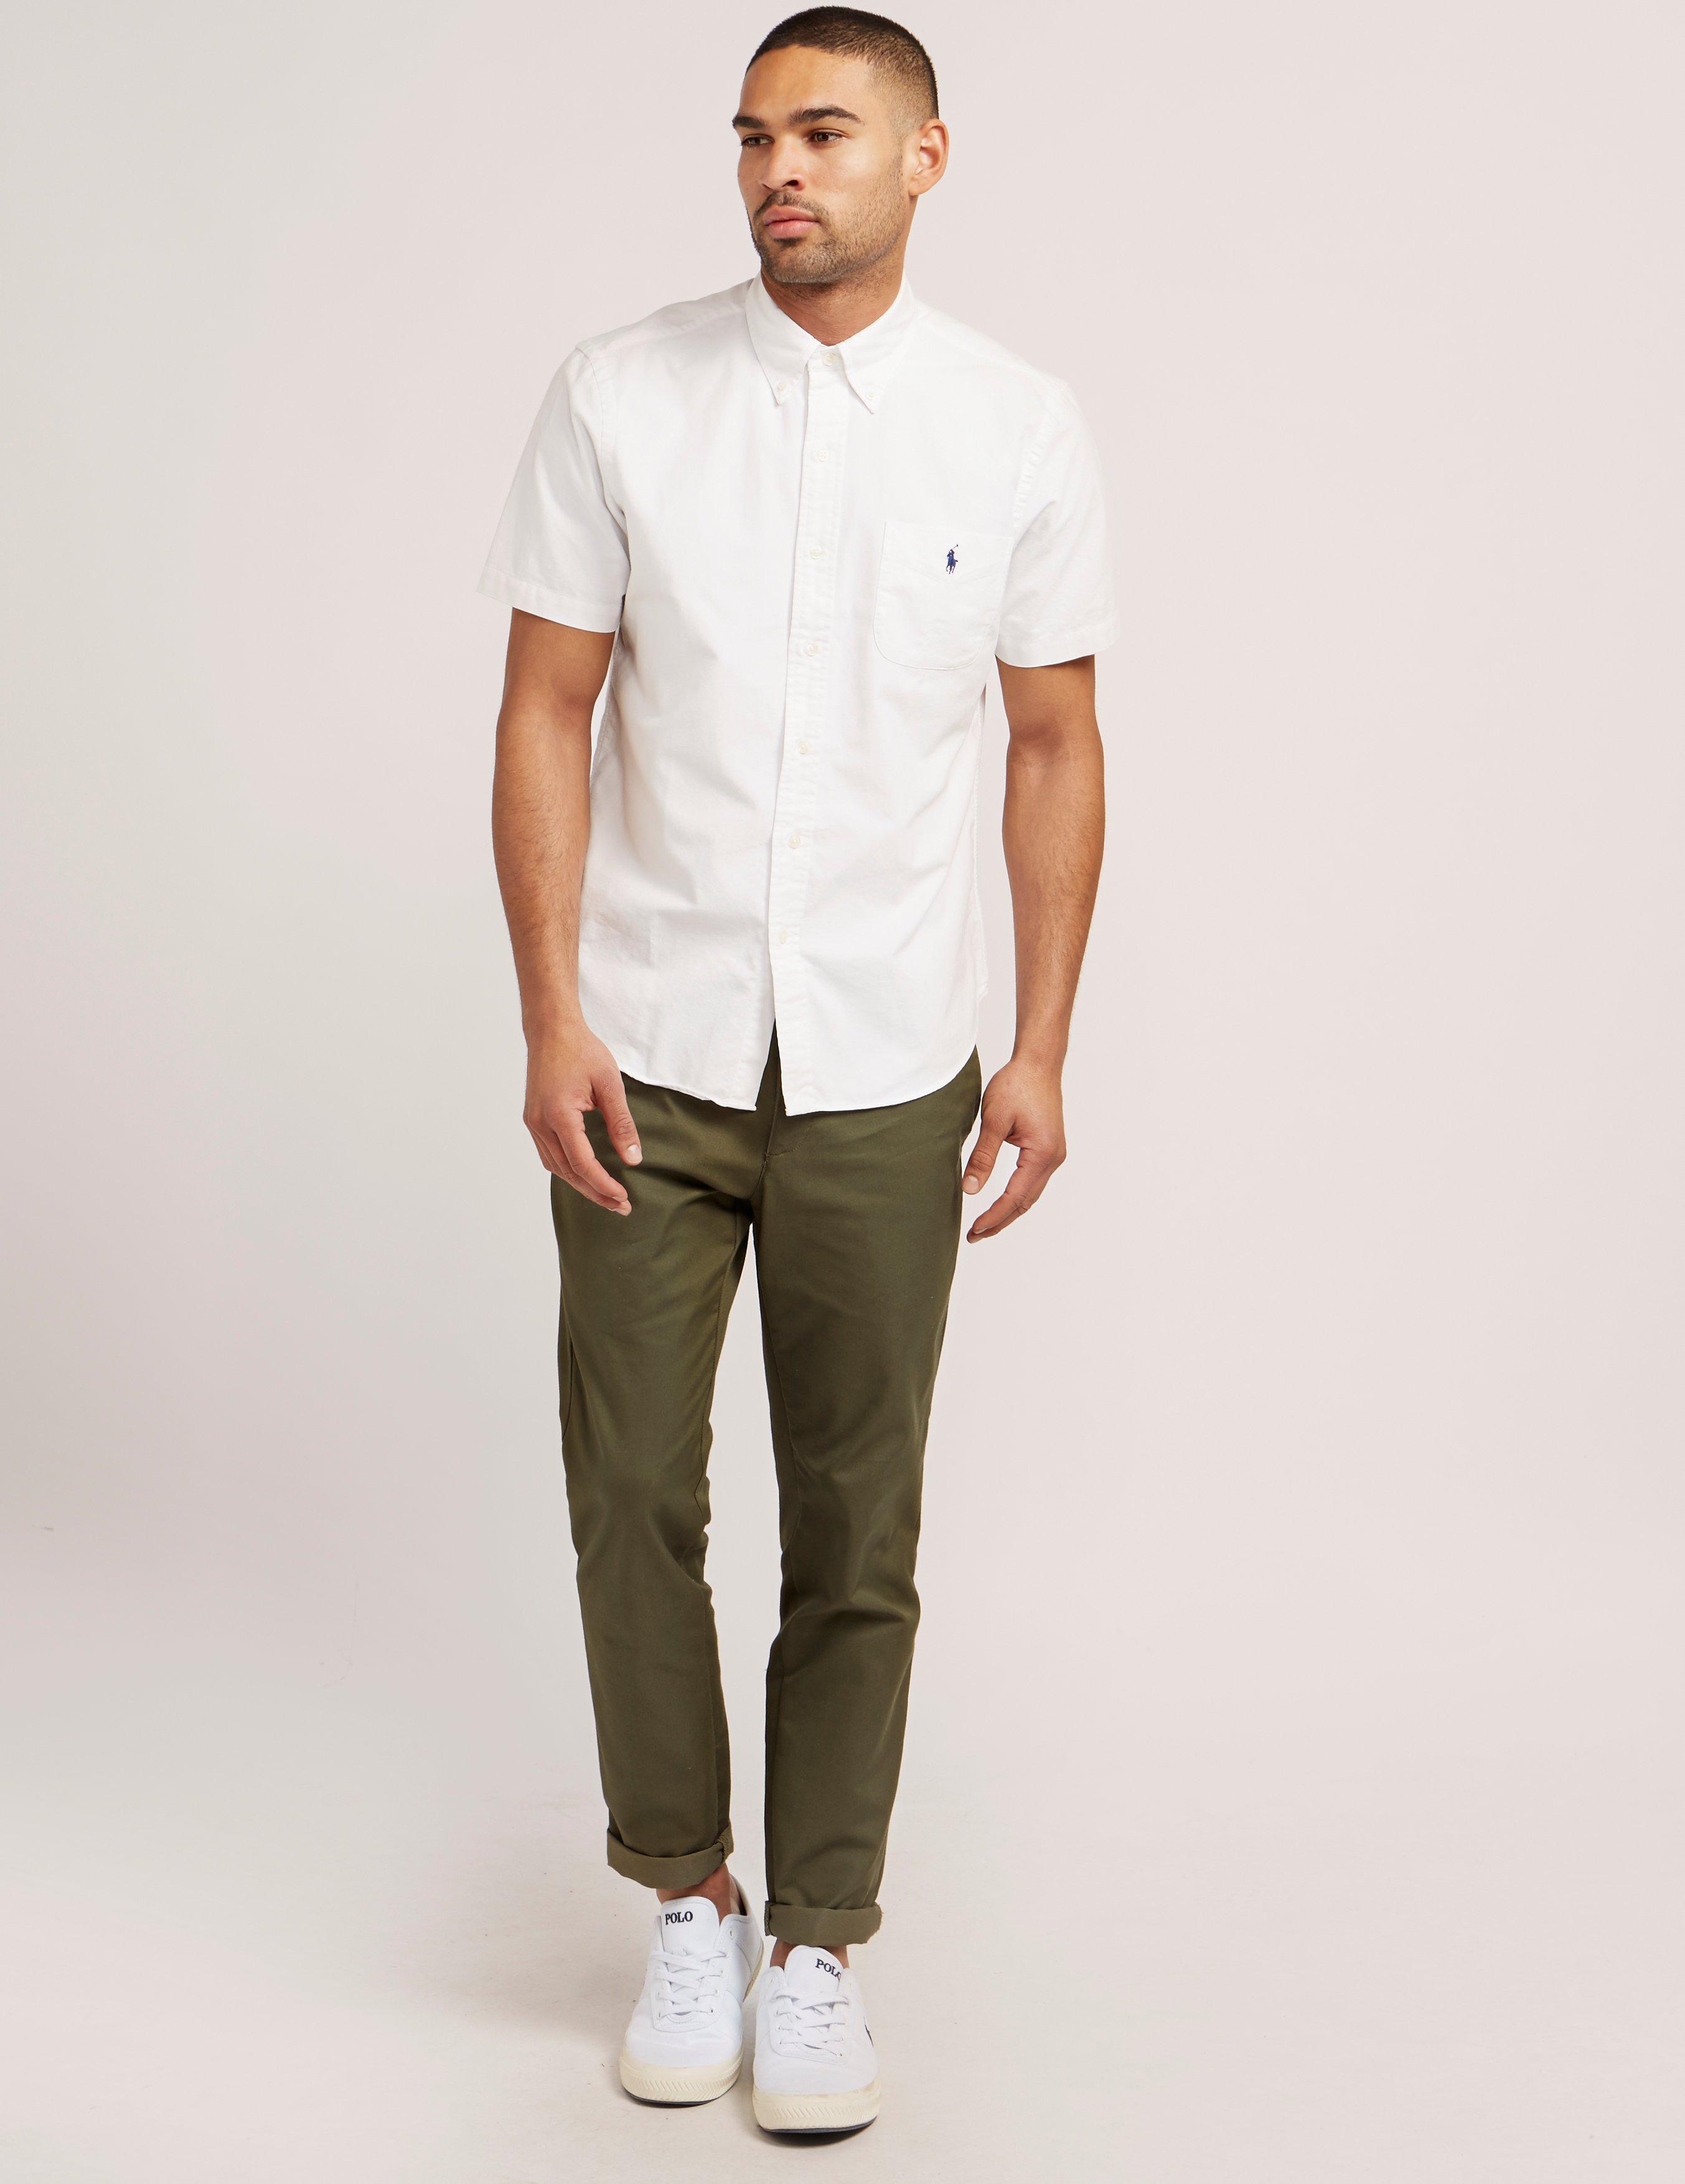 Polo Ralph Lauren Mens Oxford Short Sleeve Shirt White for Men | Lyst